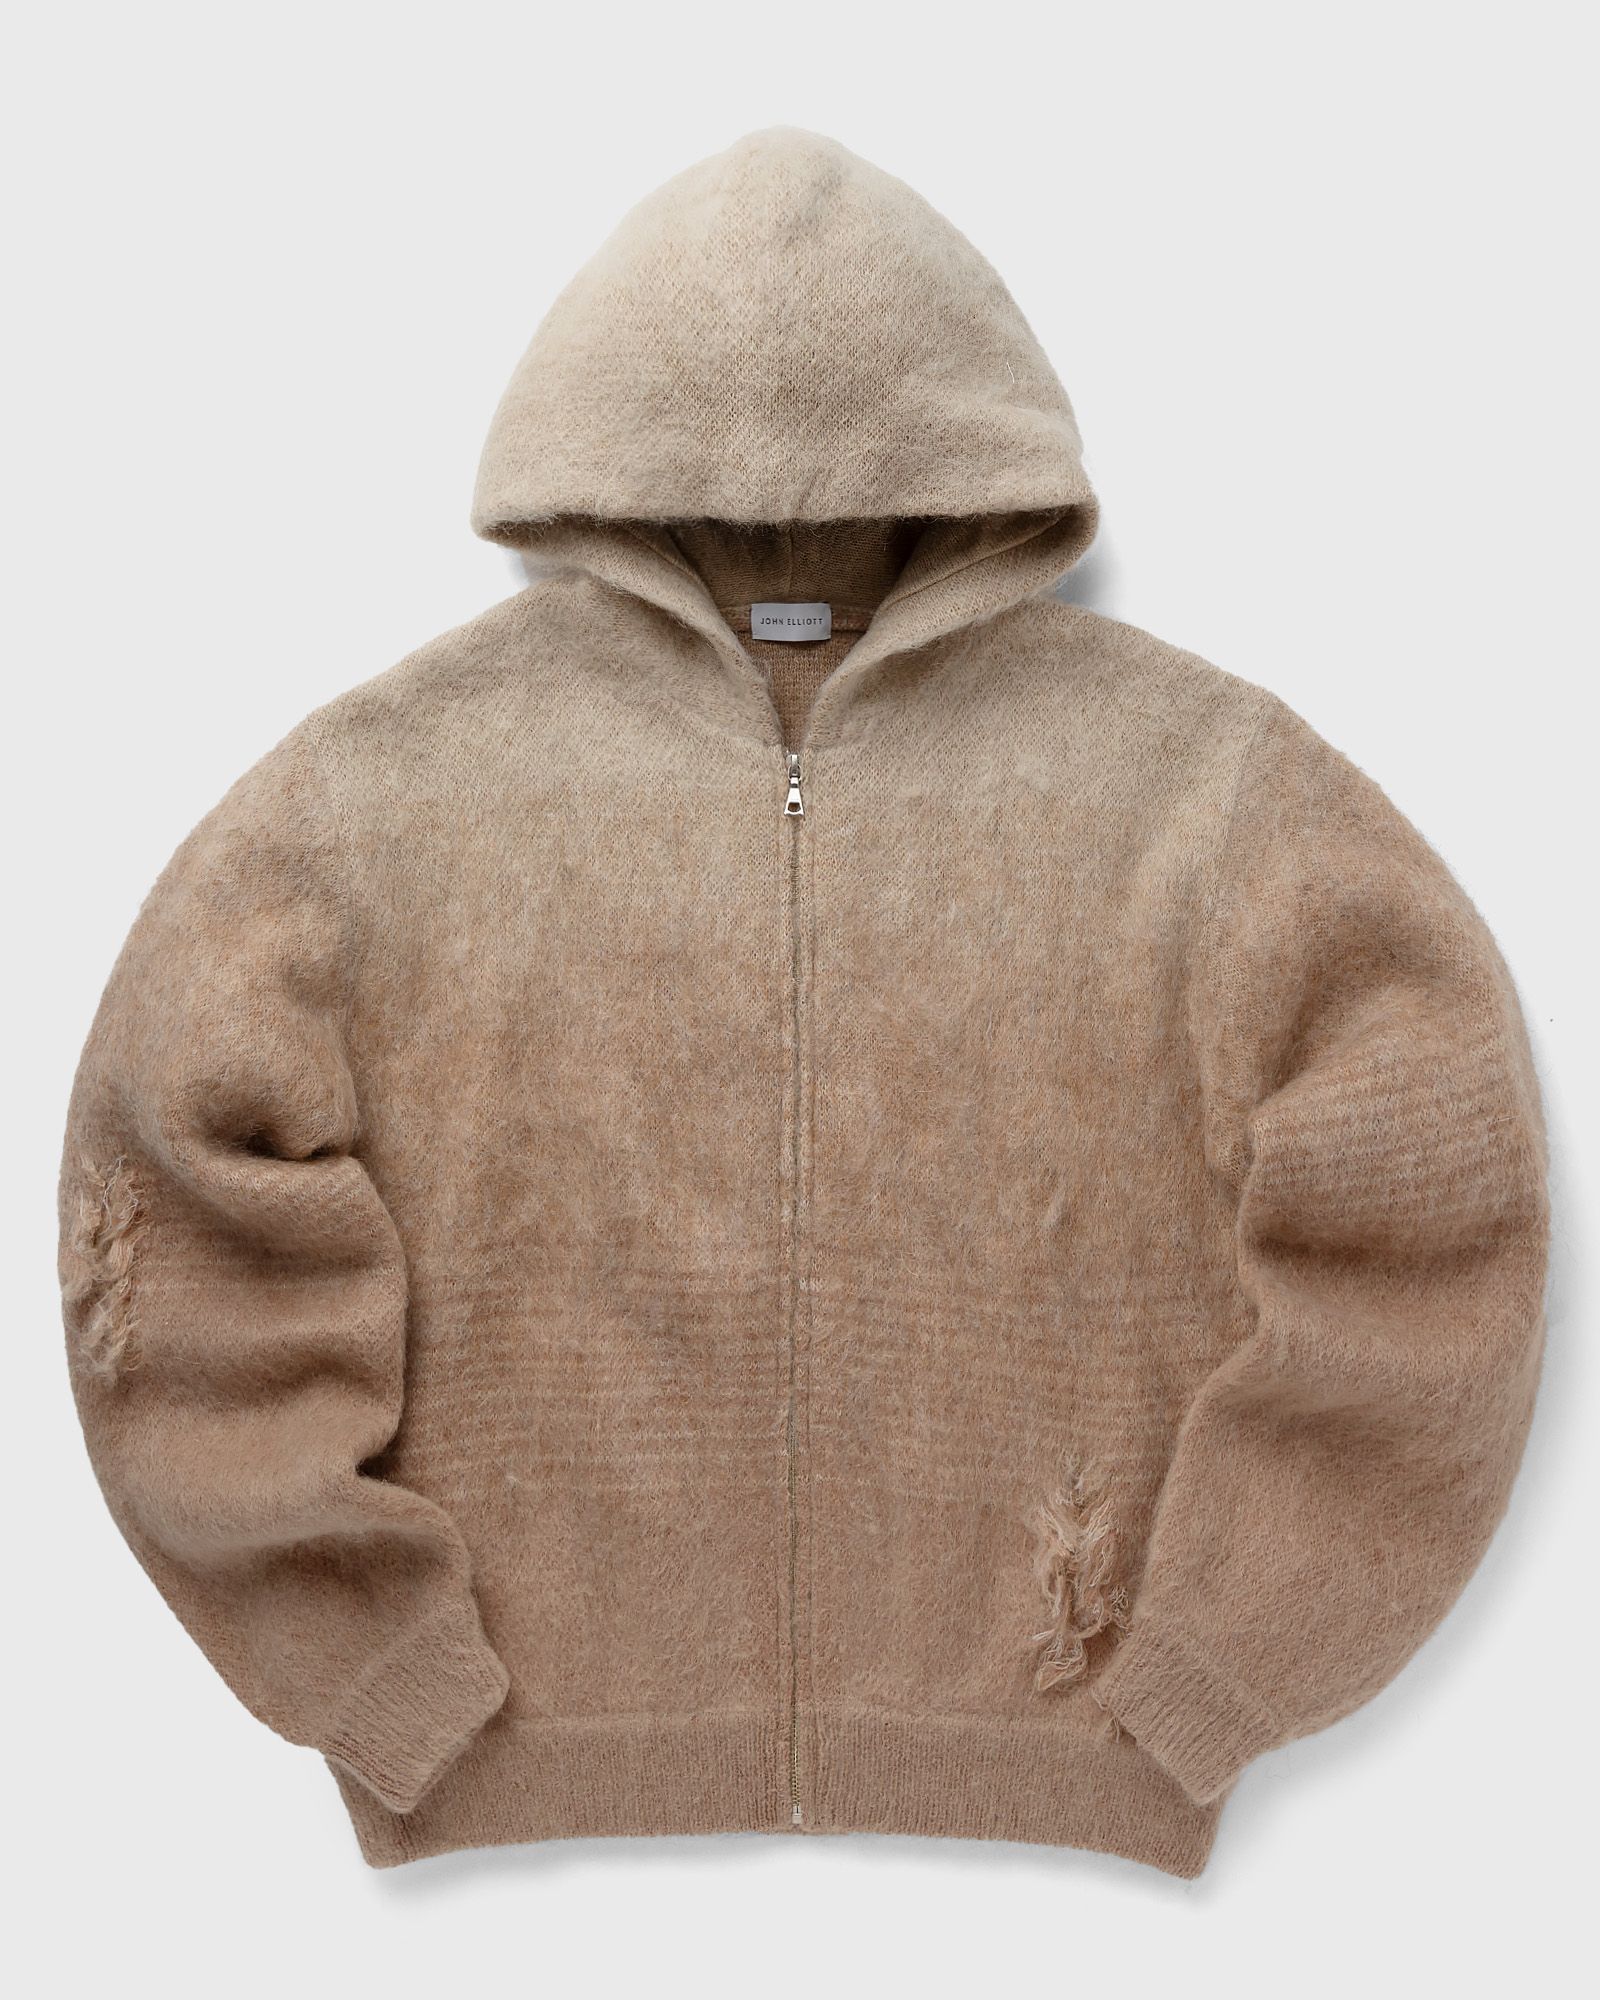 John Elliott - gradient mohair full-zip men hoodies|zippers brown in größe:m